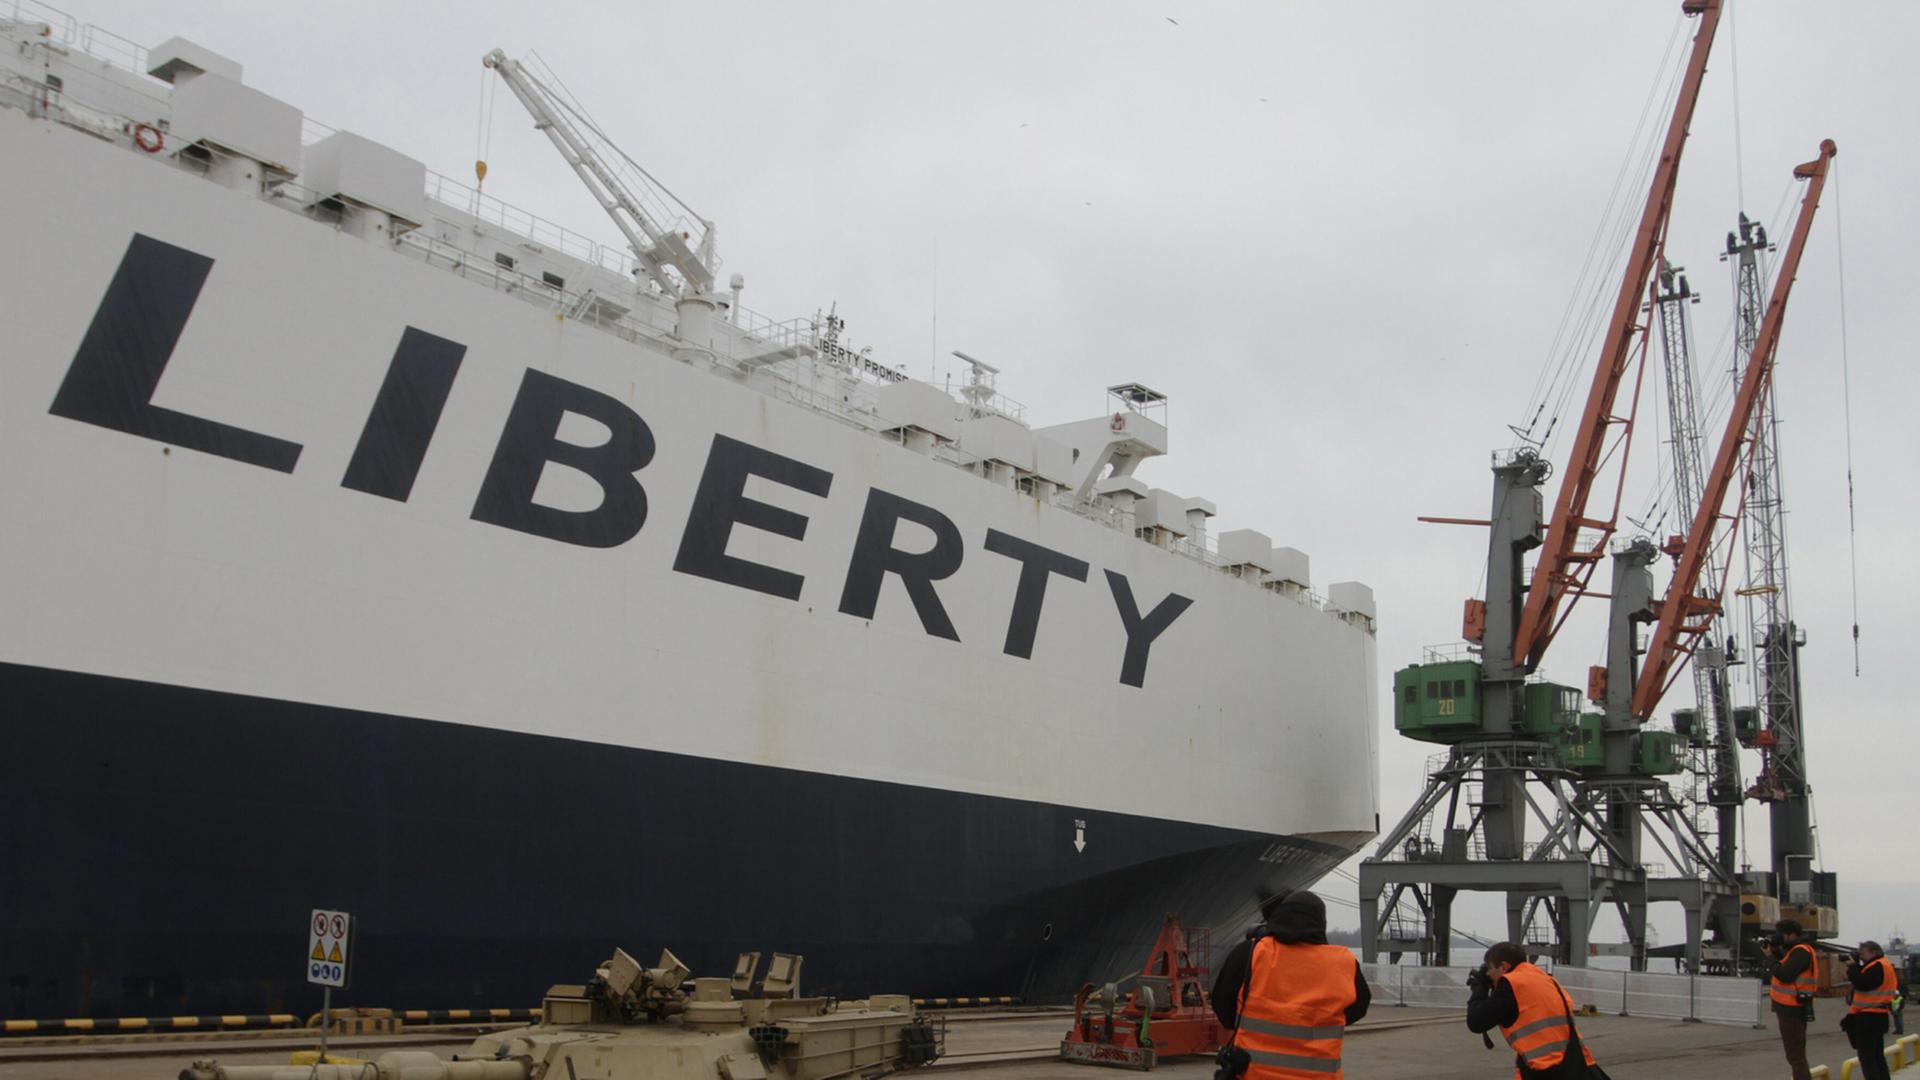 Rollender US-Panzer im Hafen von Riga, im Hintergrund ein Frachtschiff mit der Aufschrift "Liberty" und mehrere Kräne.